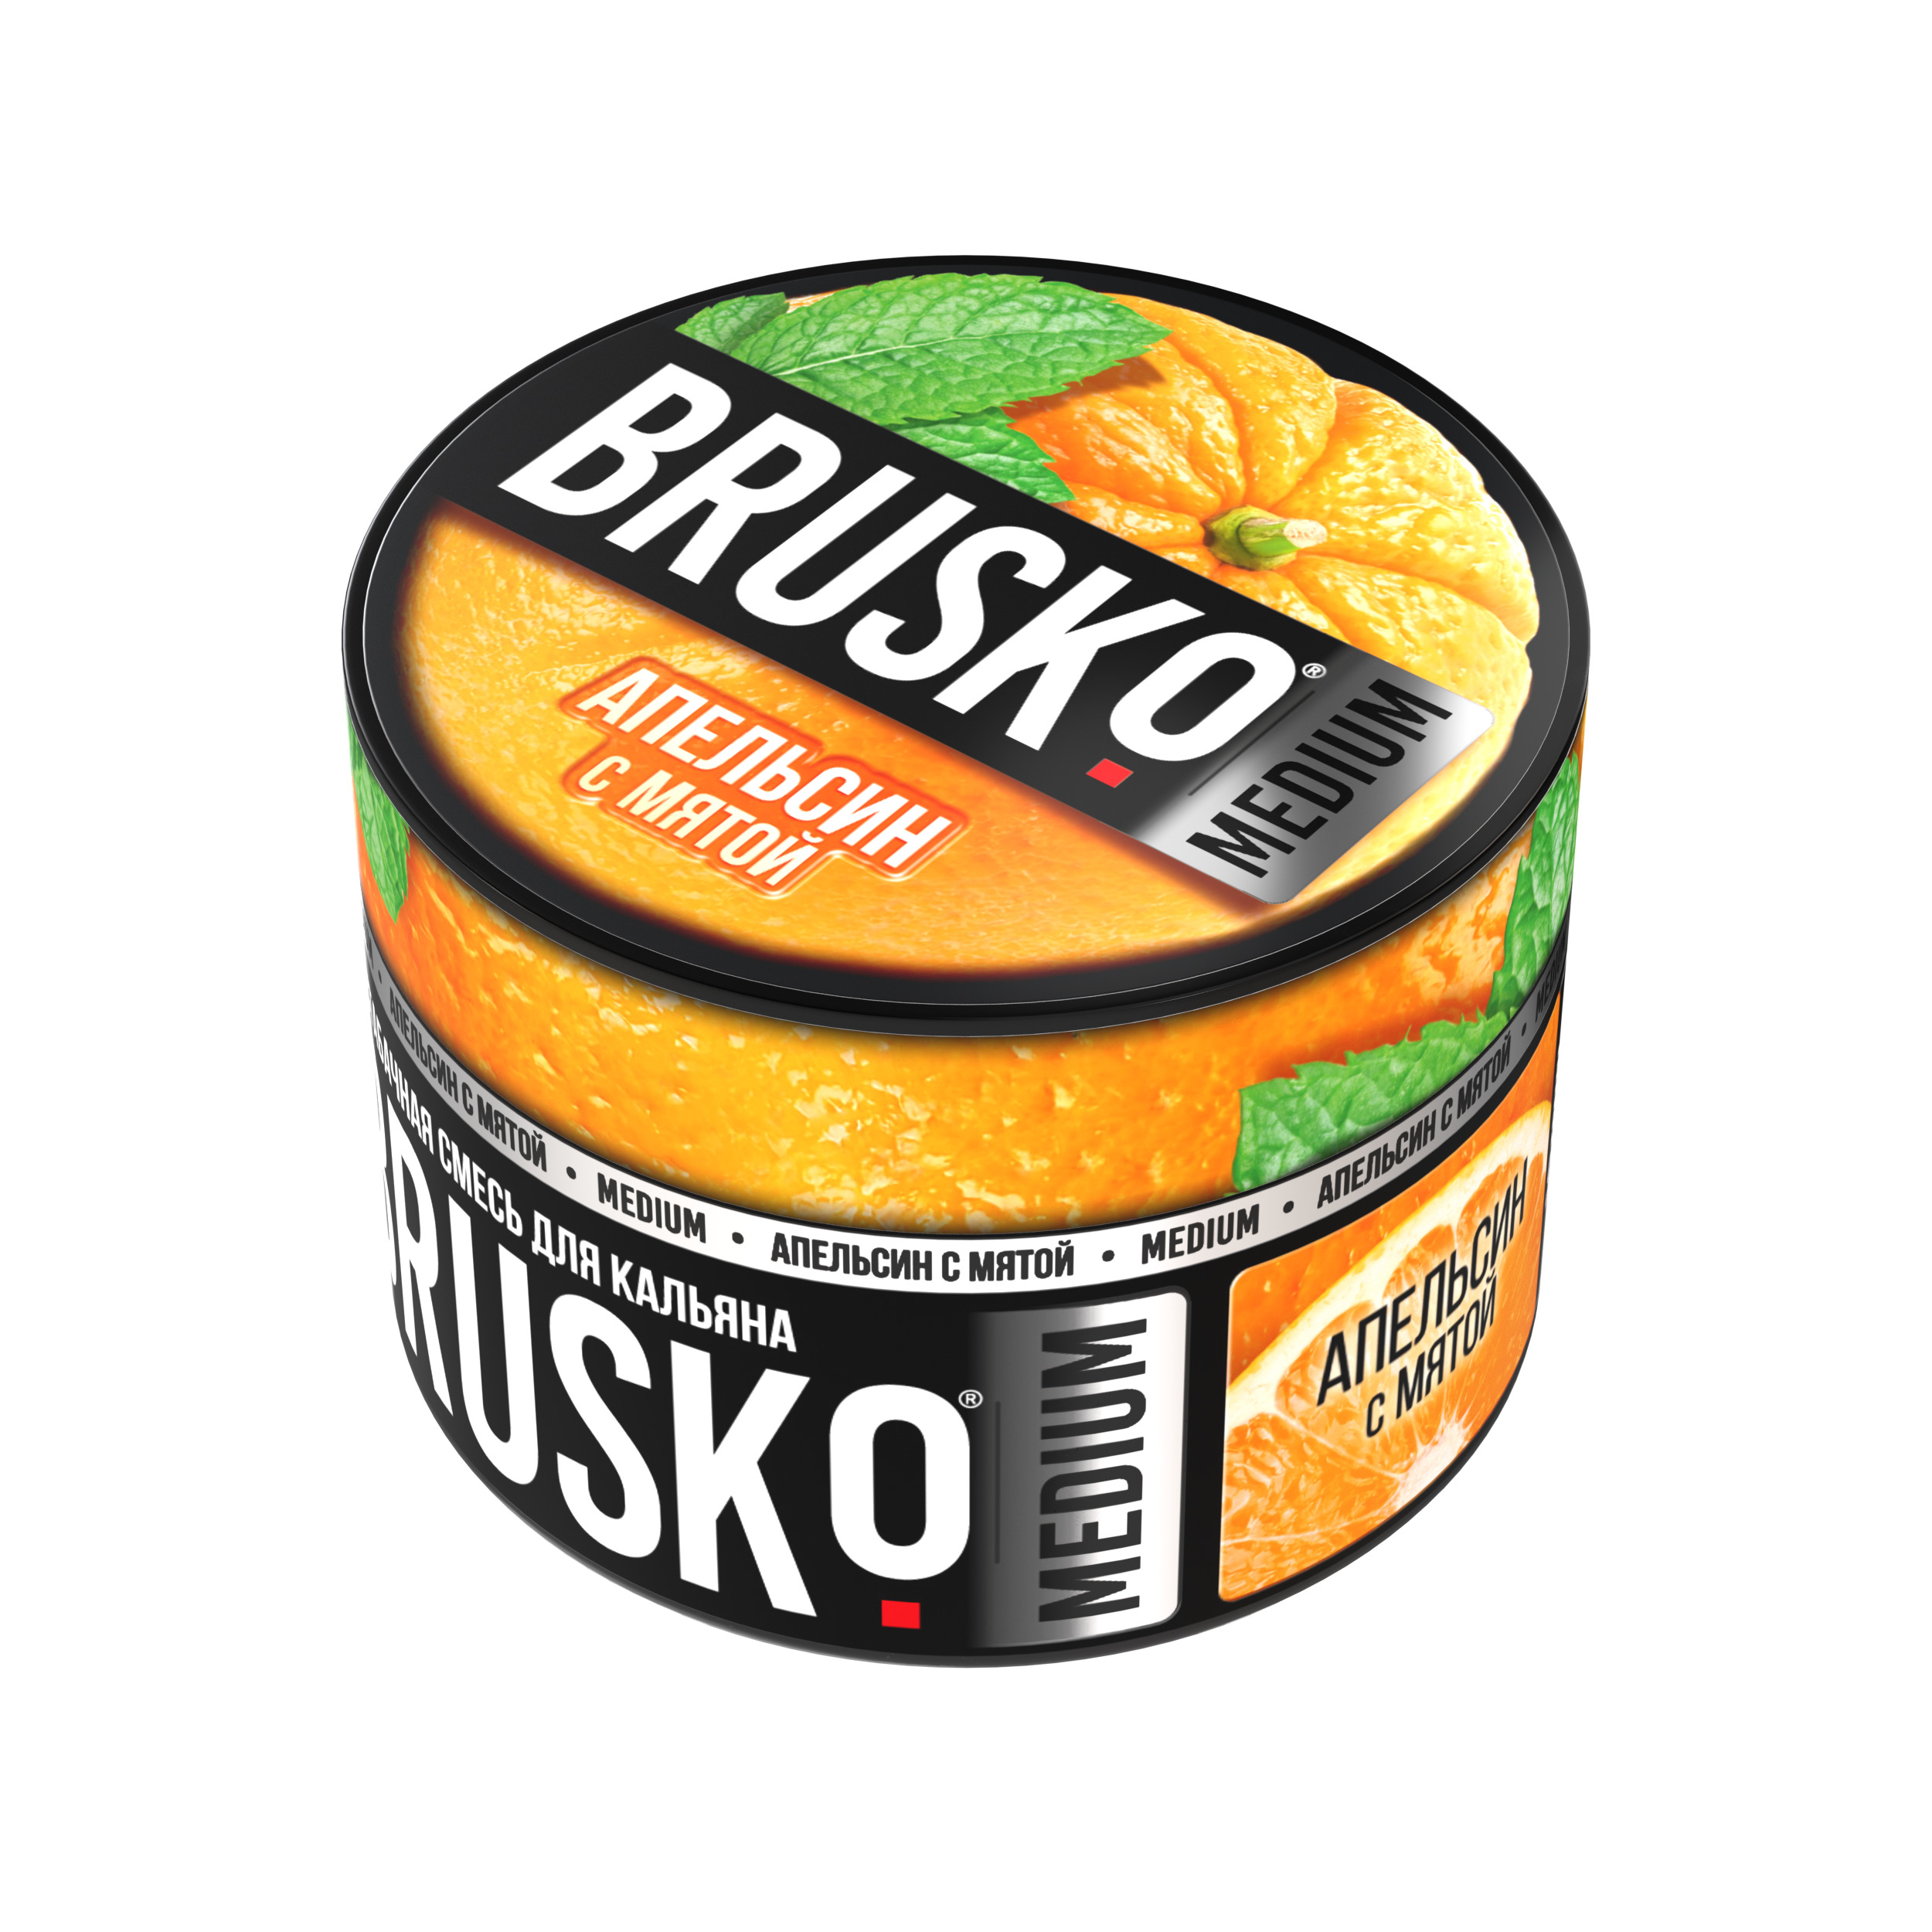 Бестабачная смесь для кальяна BRUSKO, 50 г, Апельсин с мятой, Medium